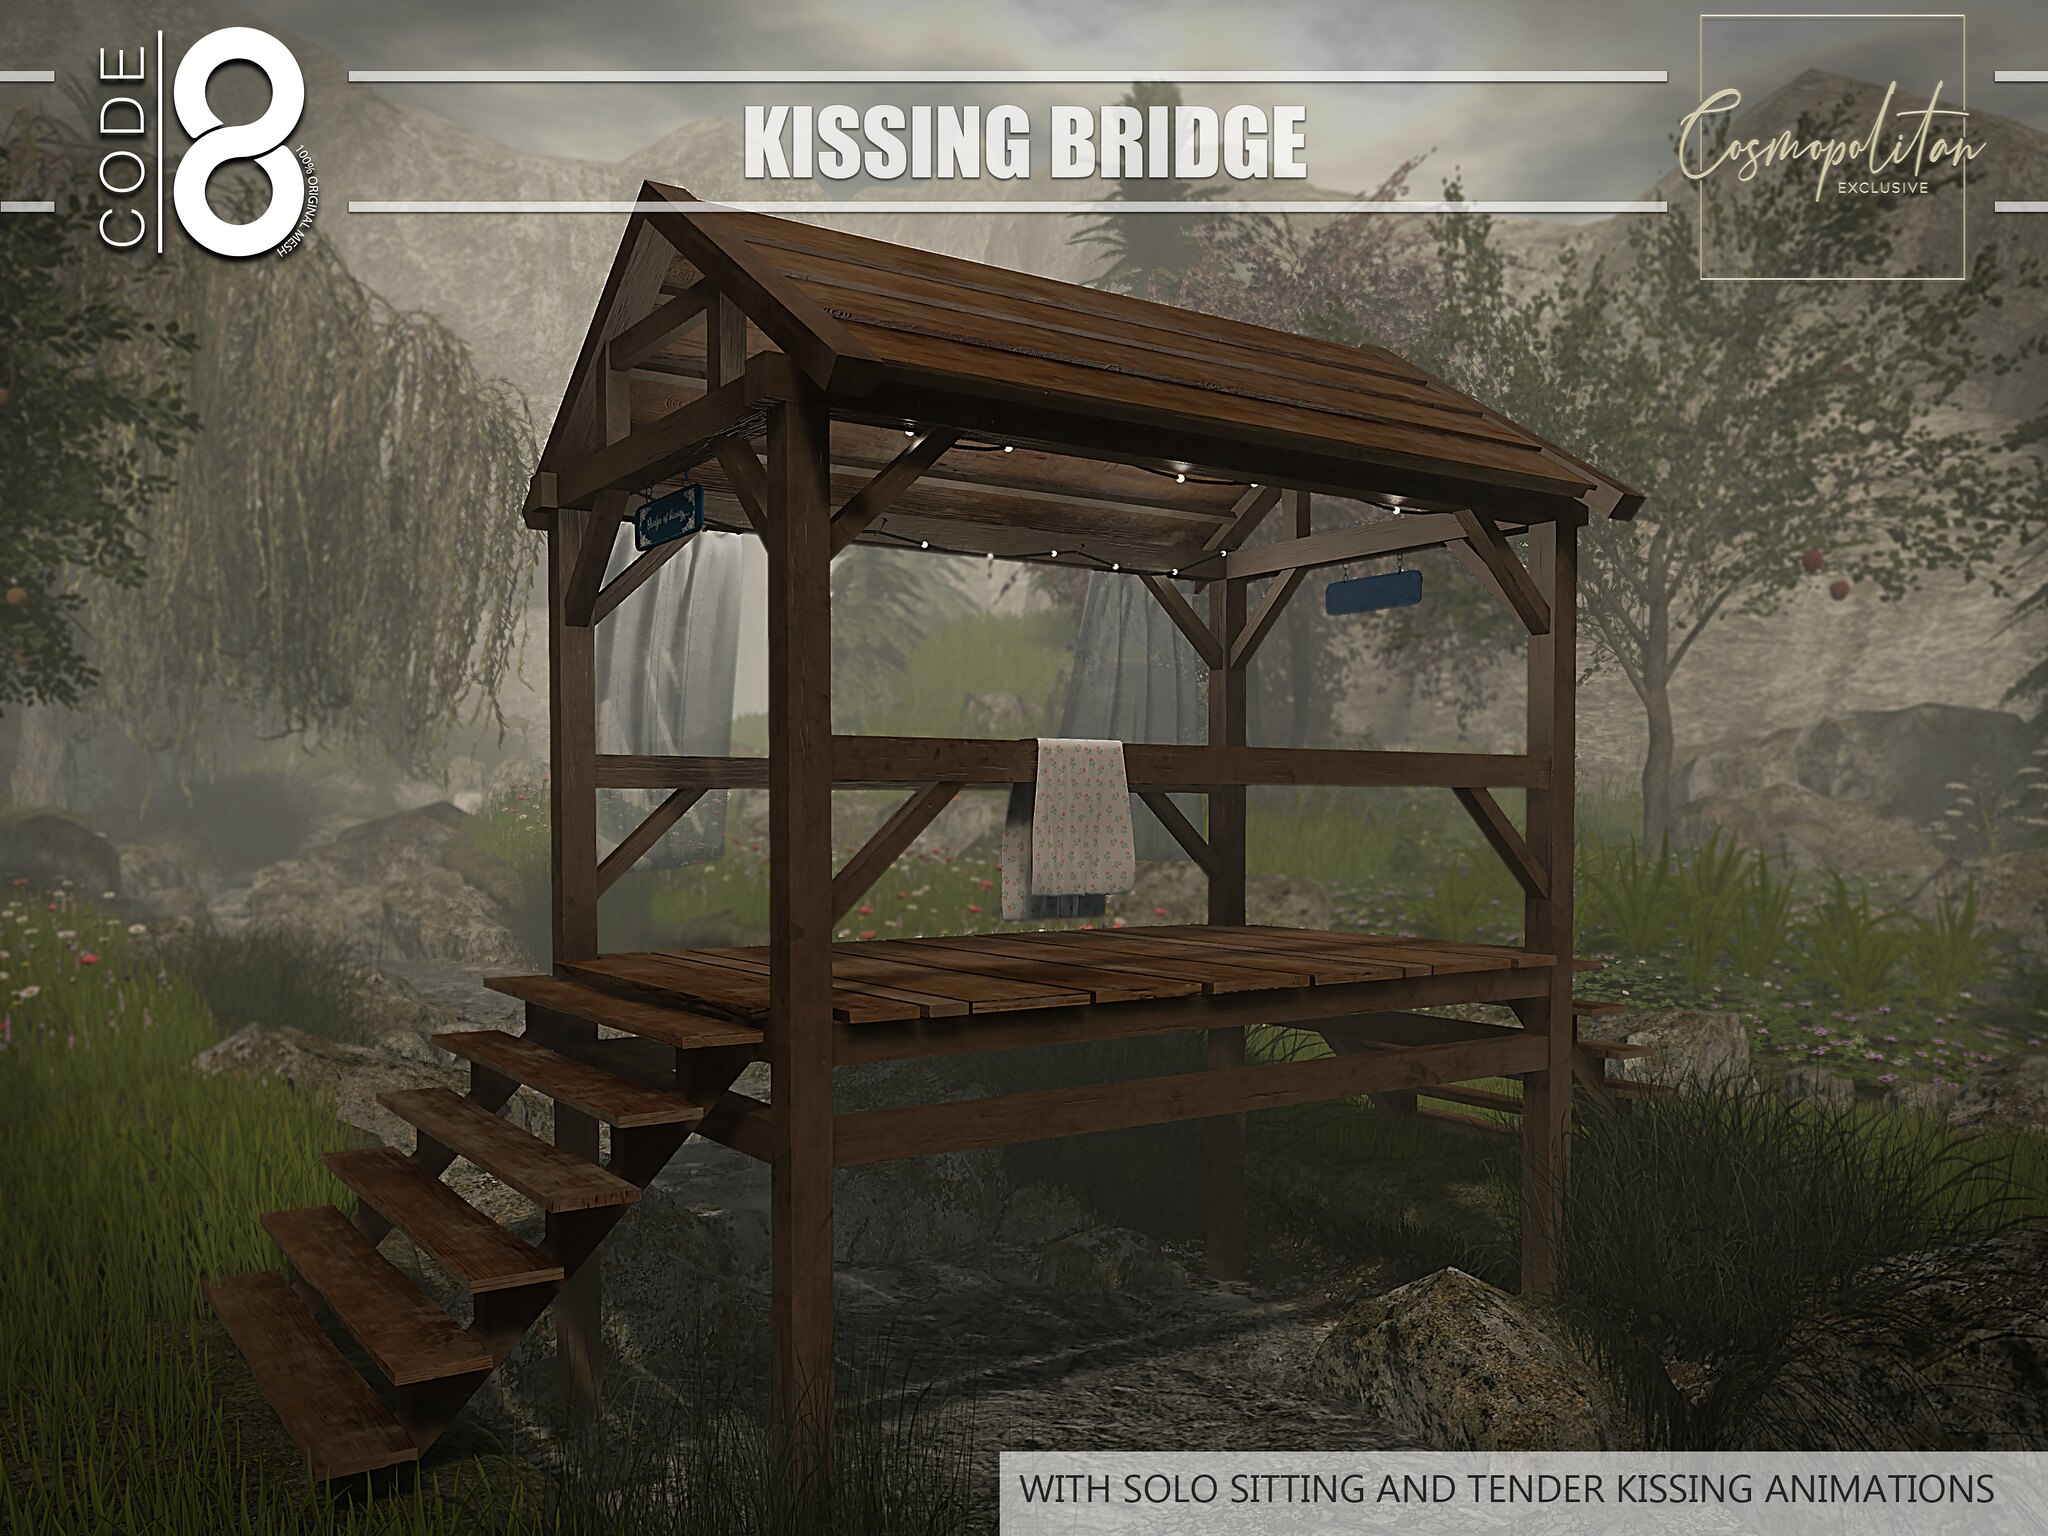 Code 8 – Kissing Bridge